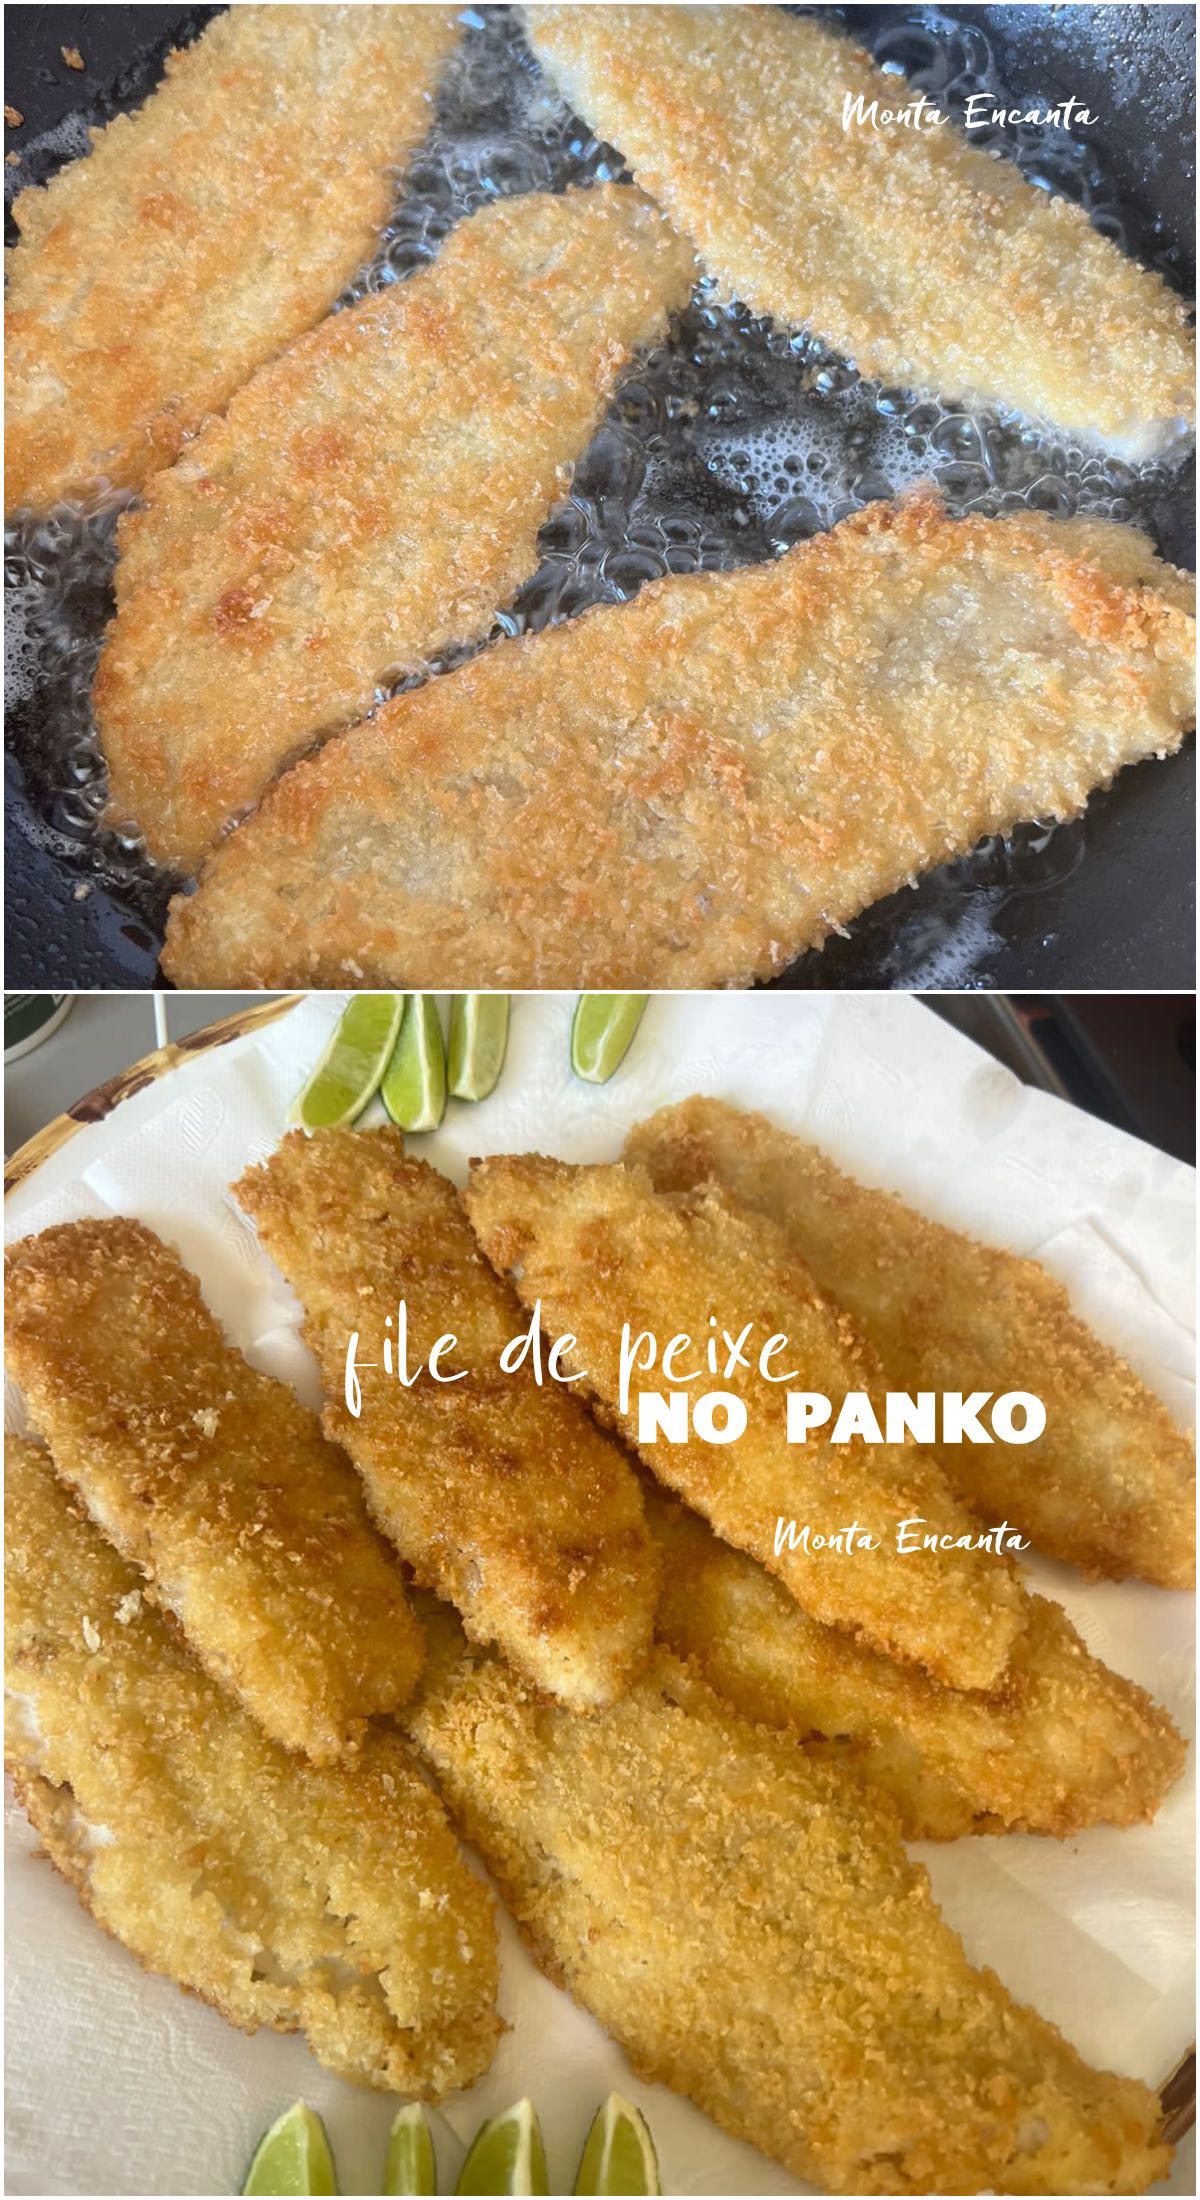 file de peixe no panko